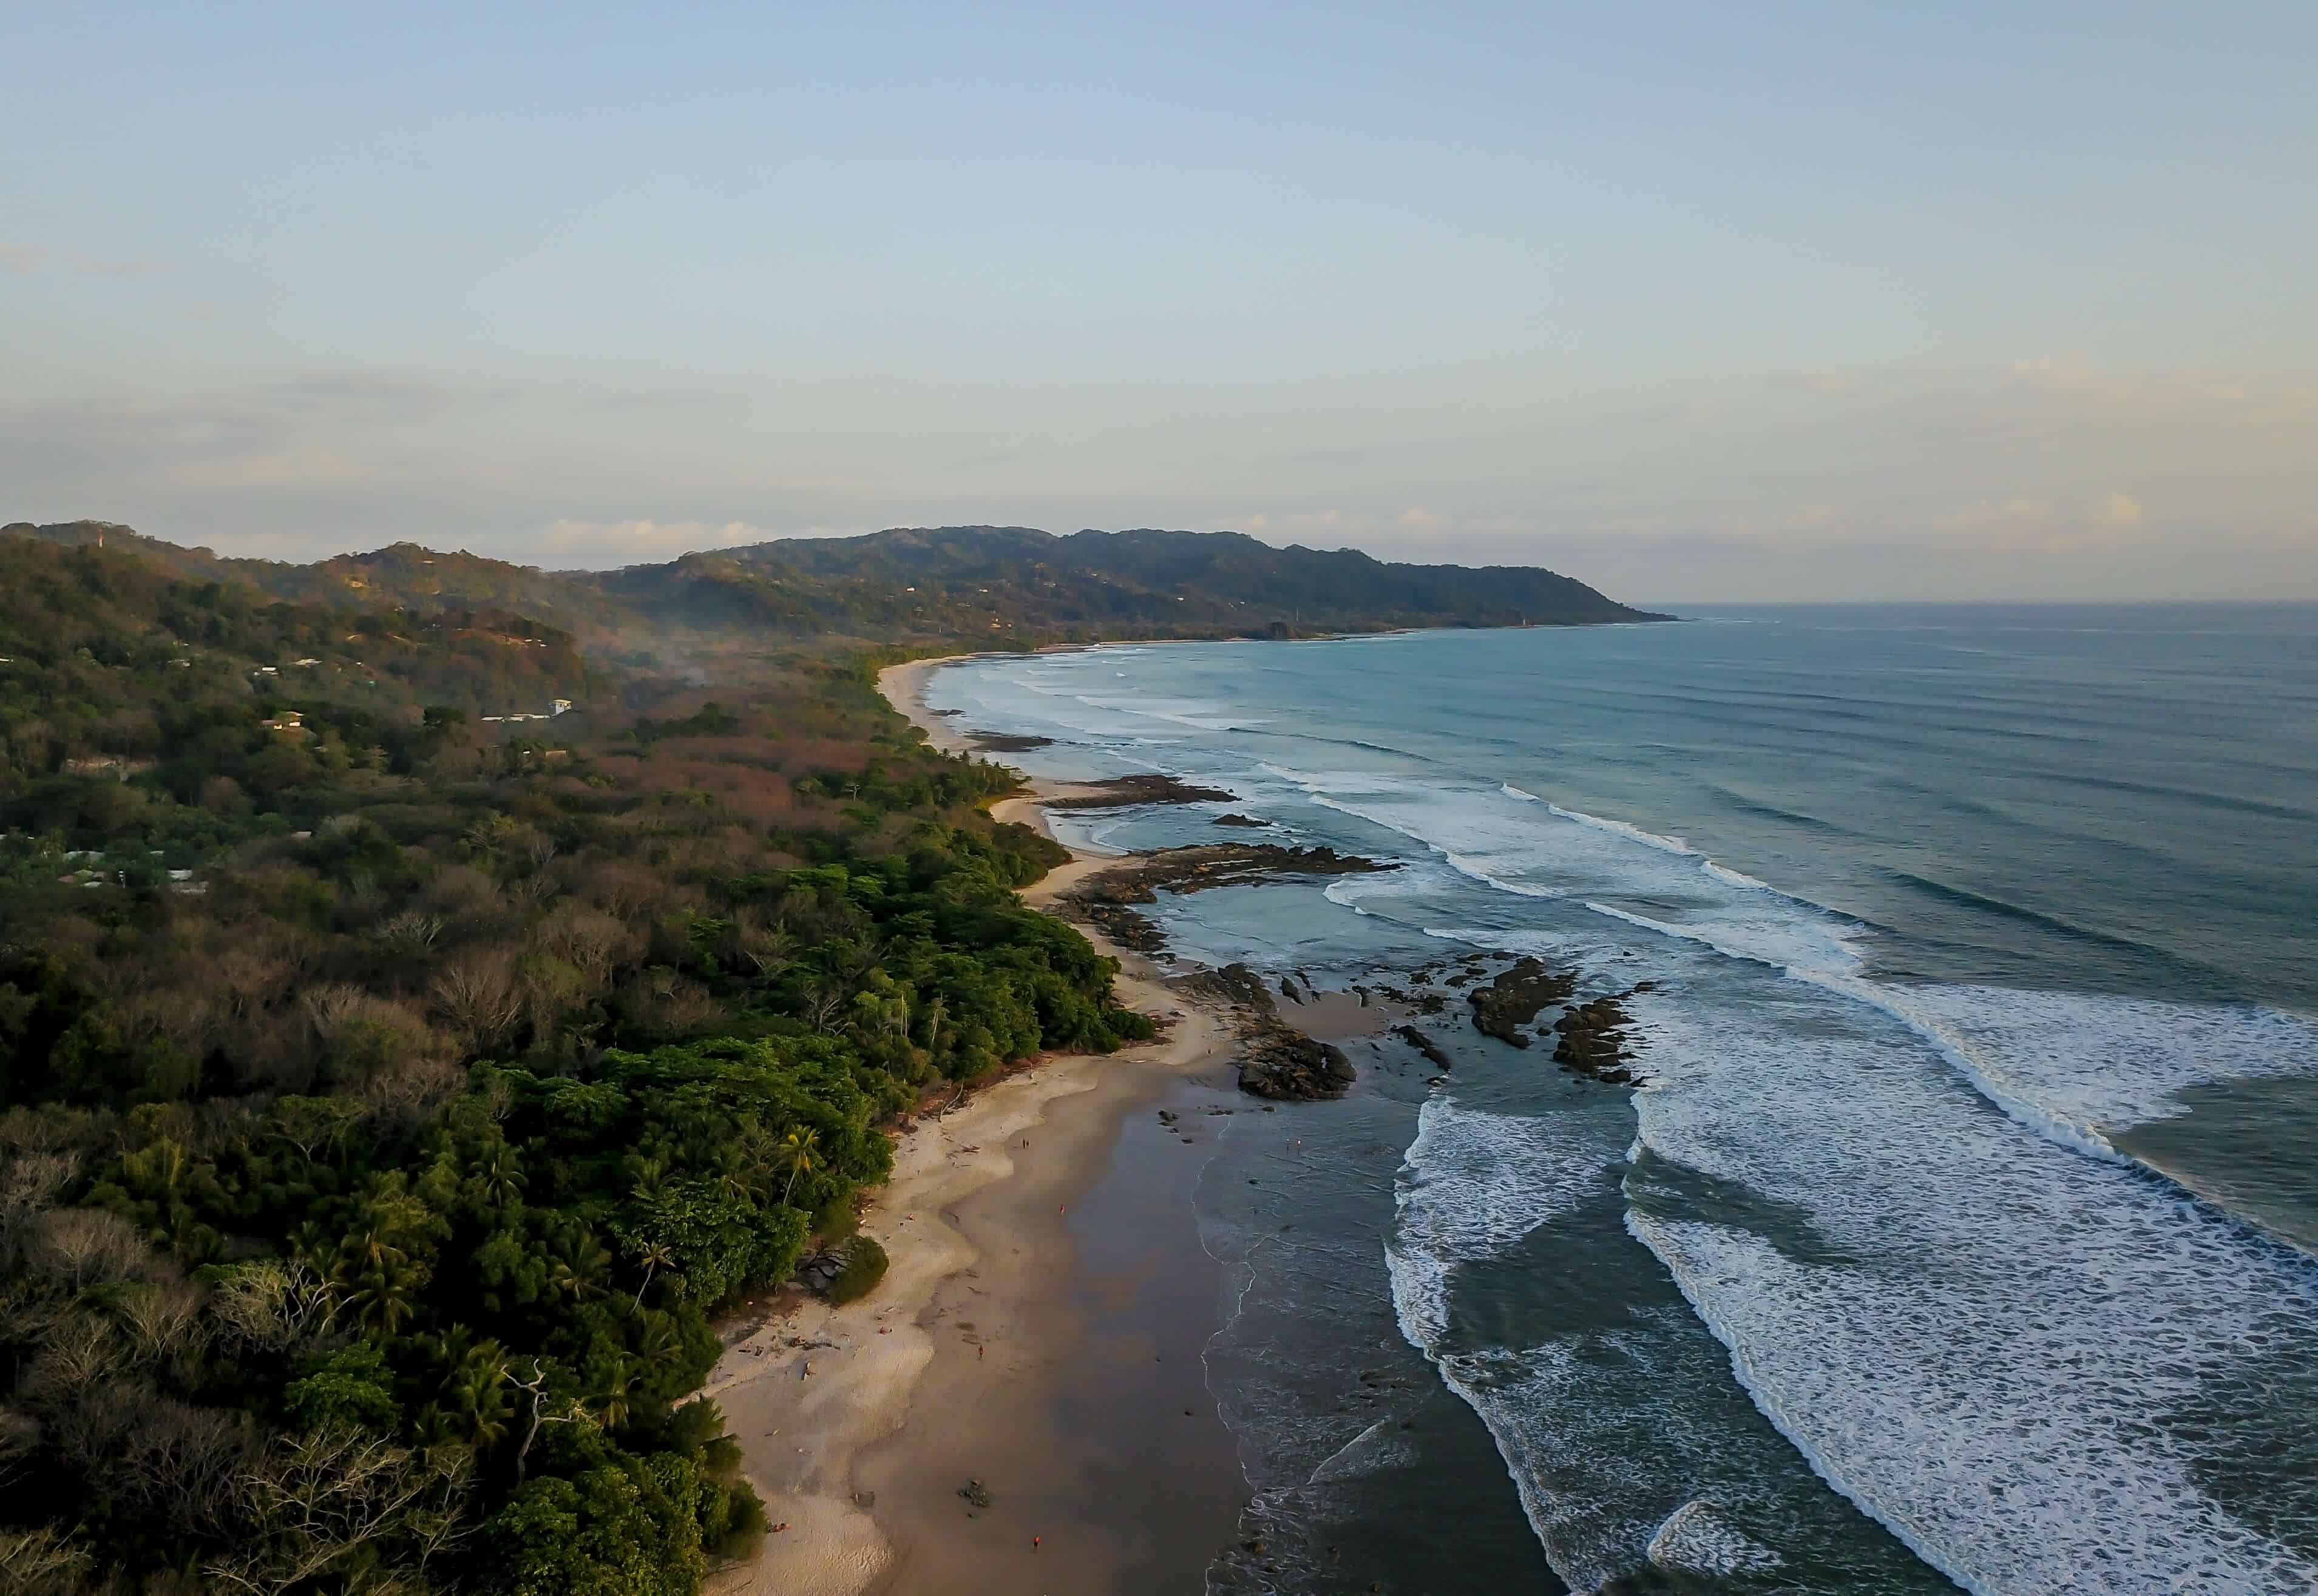 Beach in Santa Teresa, a town on Costa Rica pacific coast